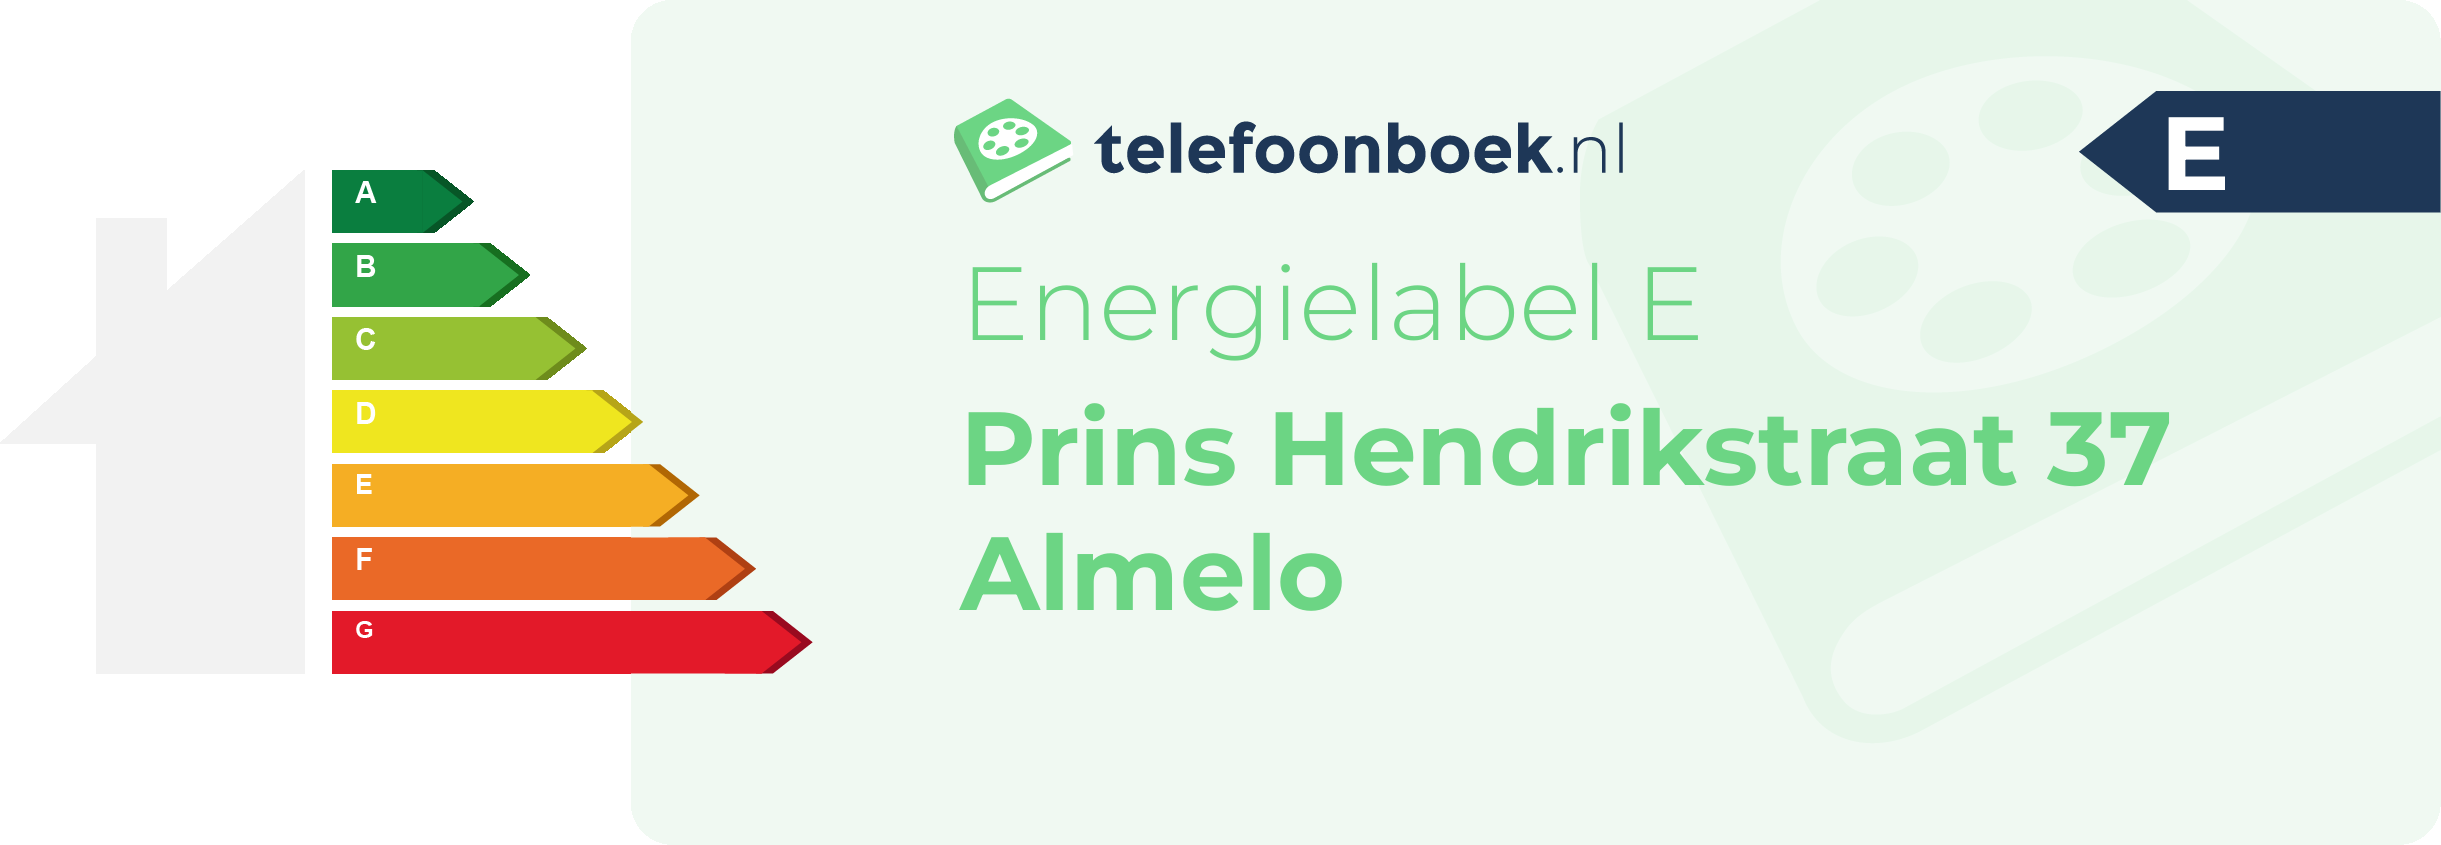 Energielabel Prins Hendrikstraat 37 Almelo